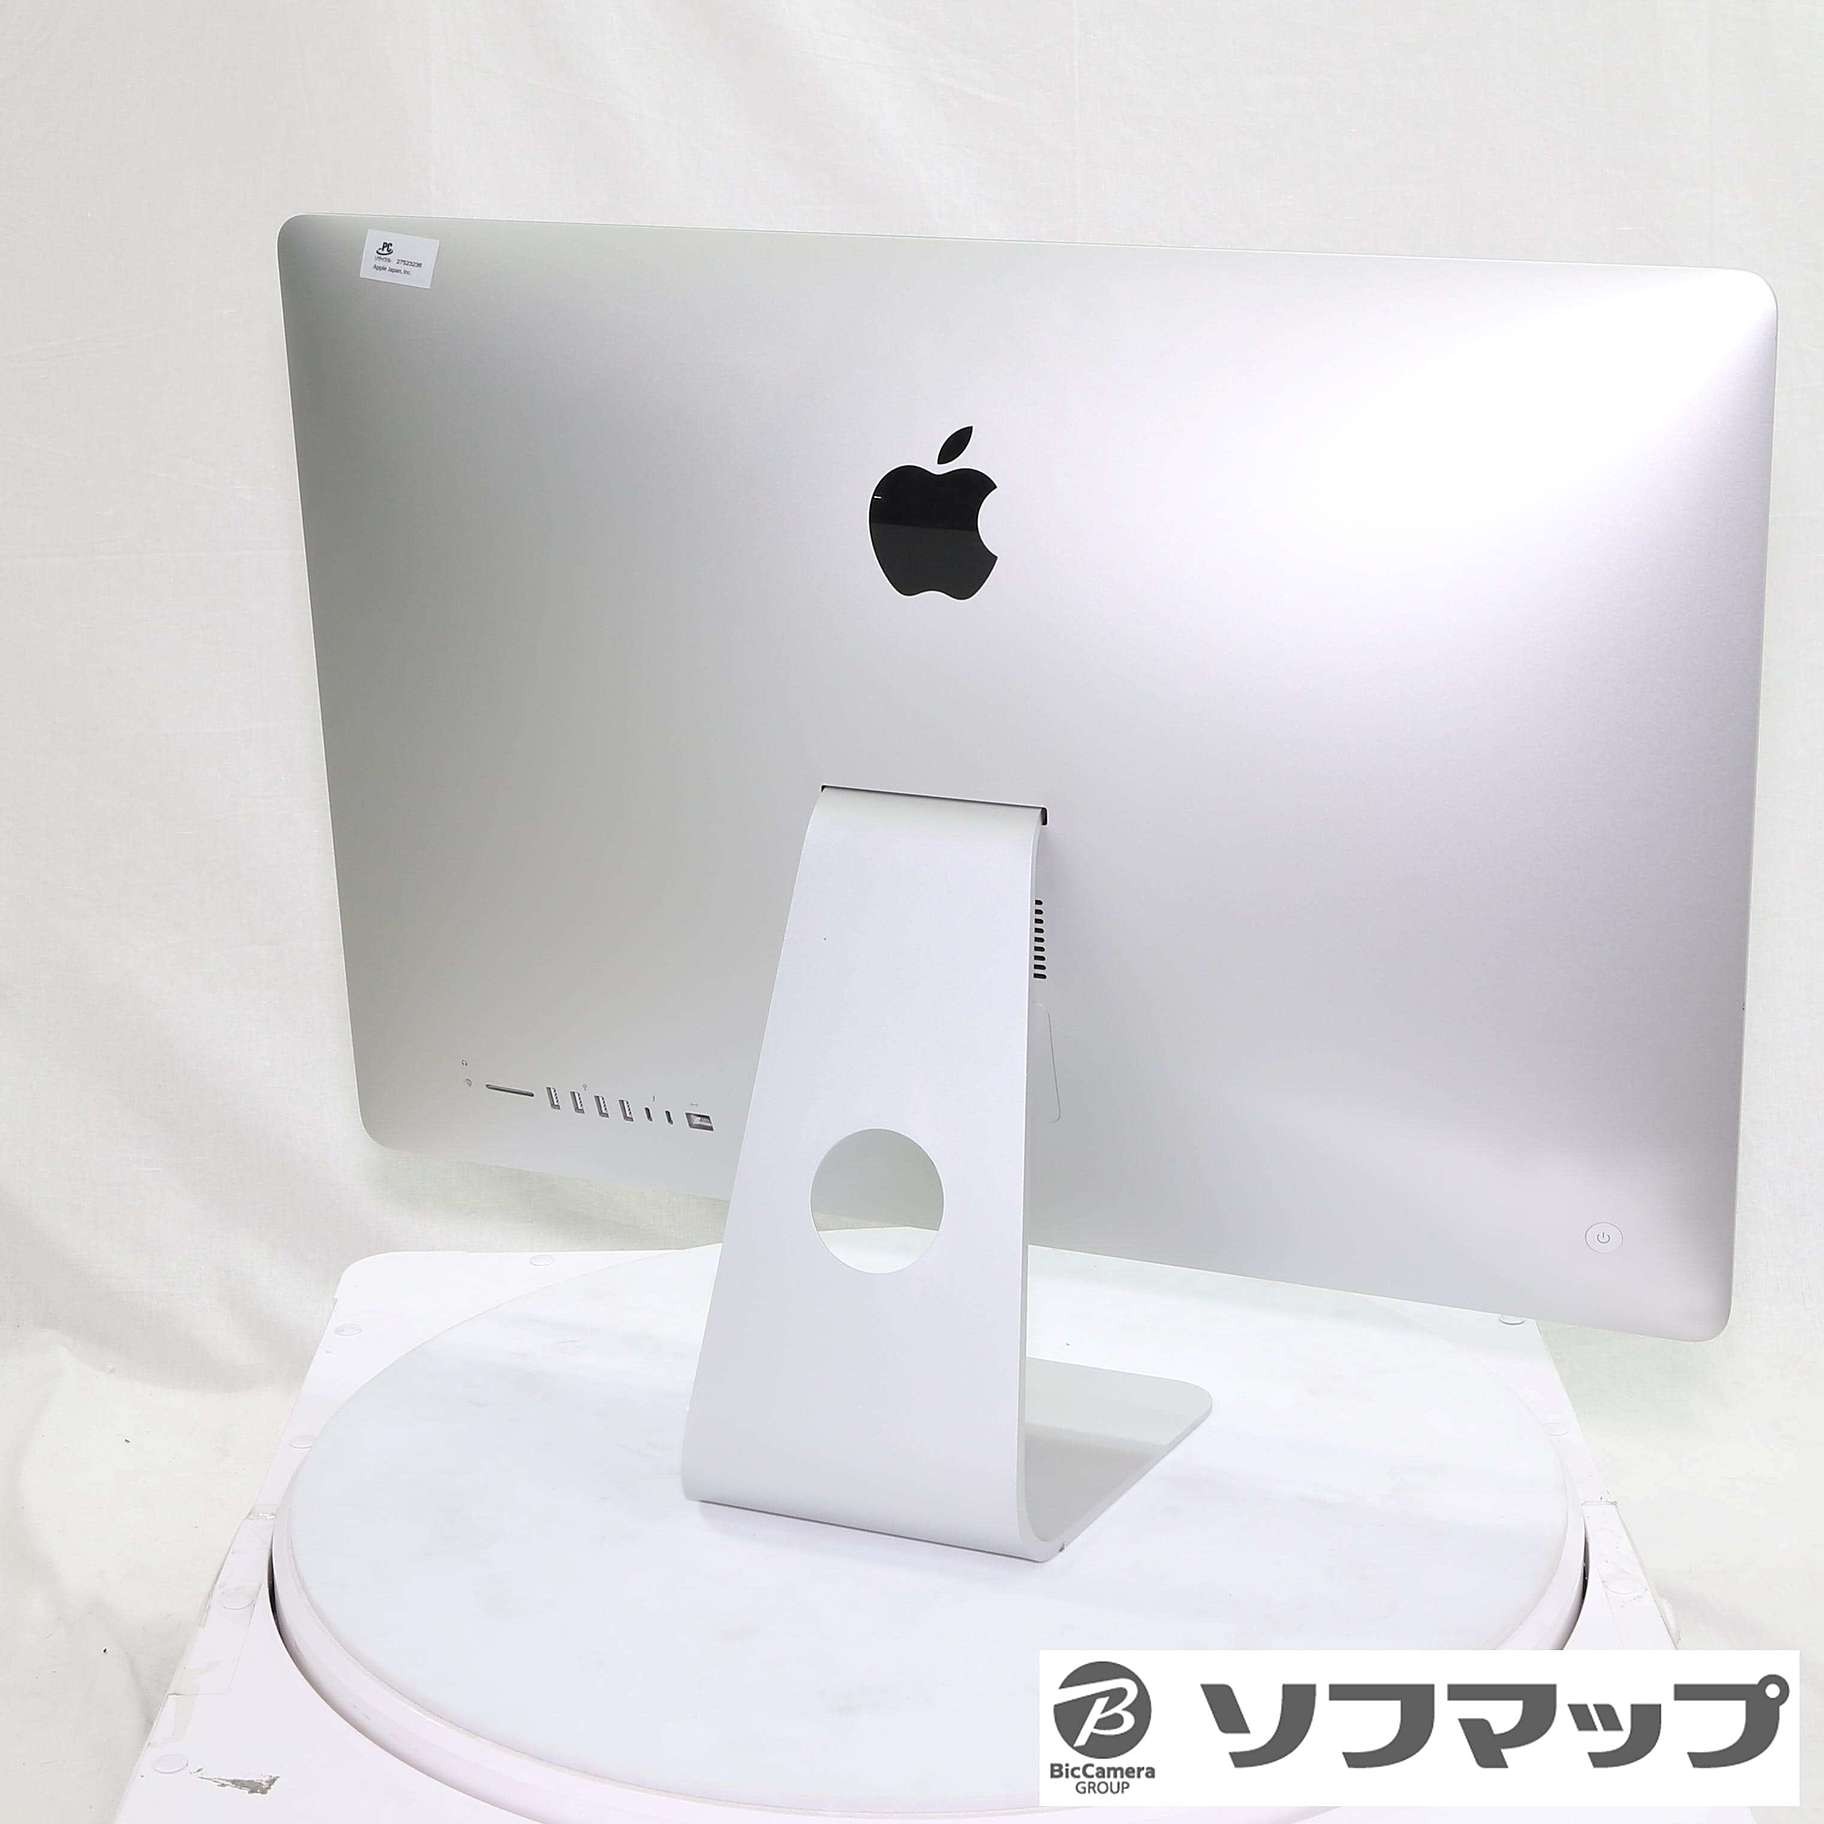 iMac MRQY2J/A (Retina 5K,27-inch, 2019)1TBグラフィックス 